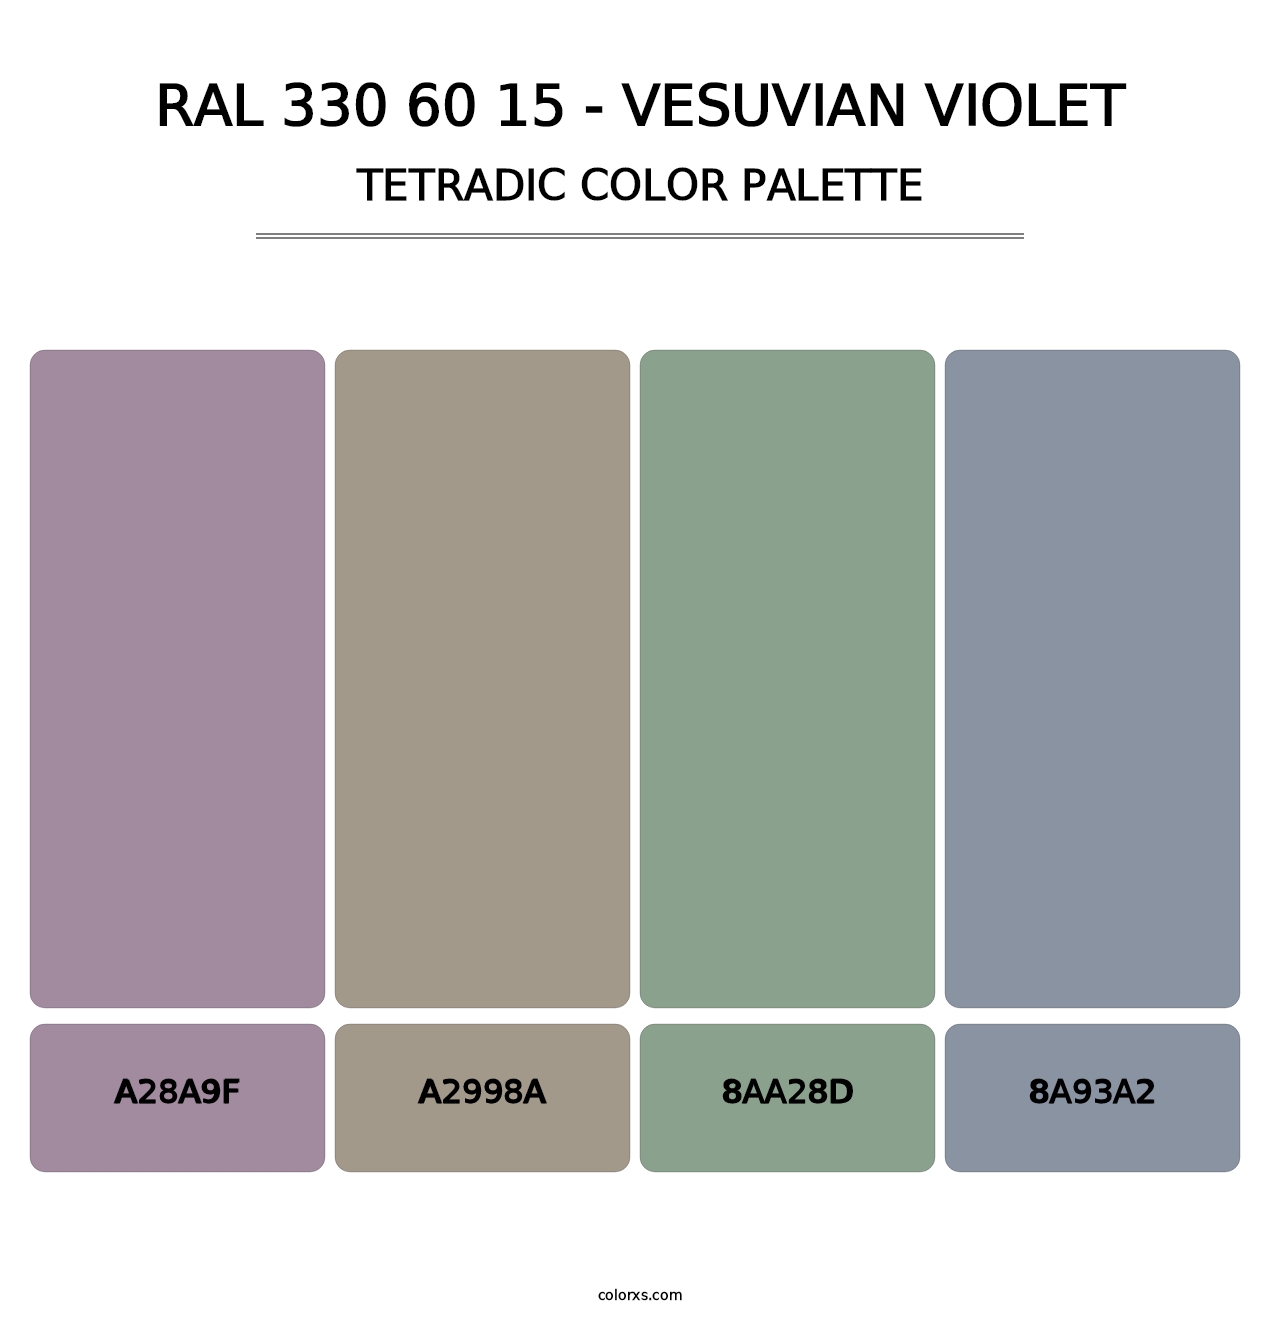 RAL 330 60 15 - Vesuvian Violet - Tetradic Color Palette